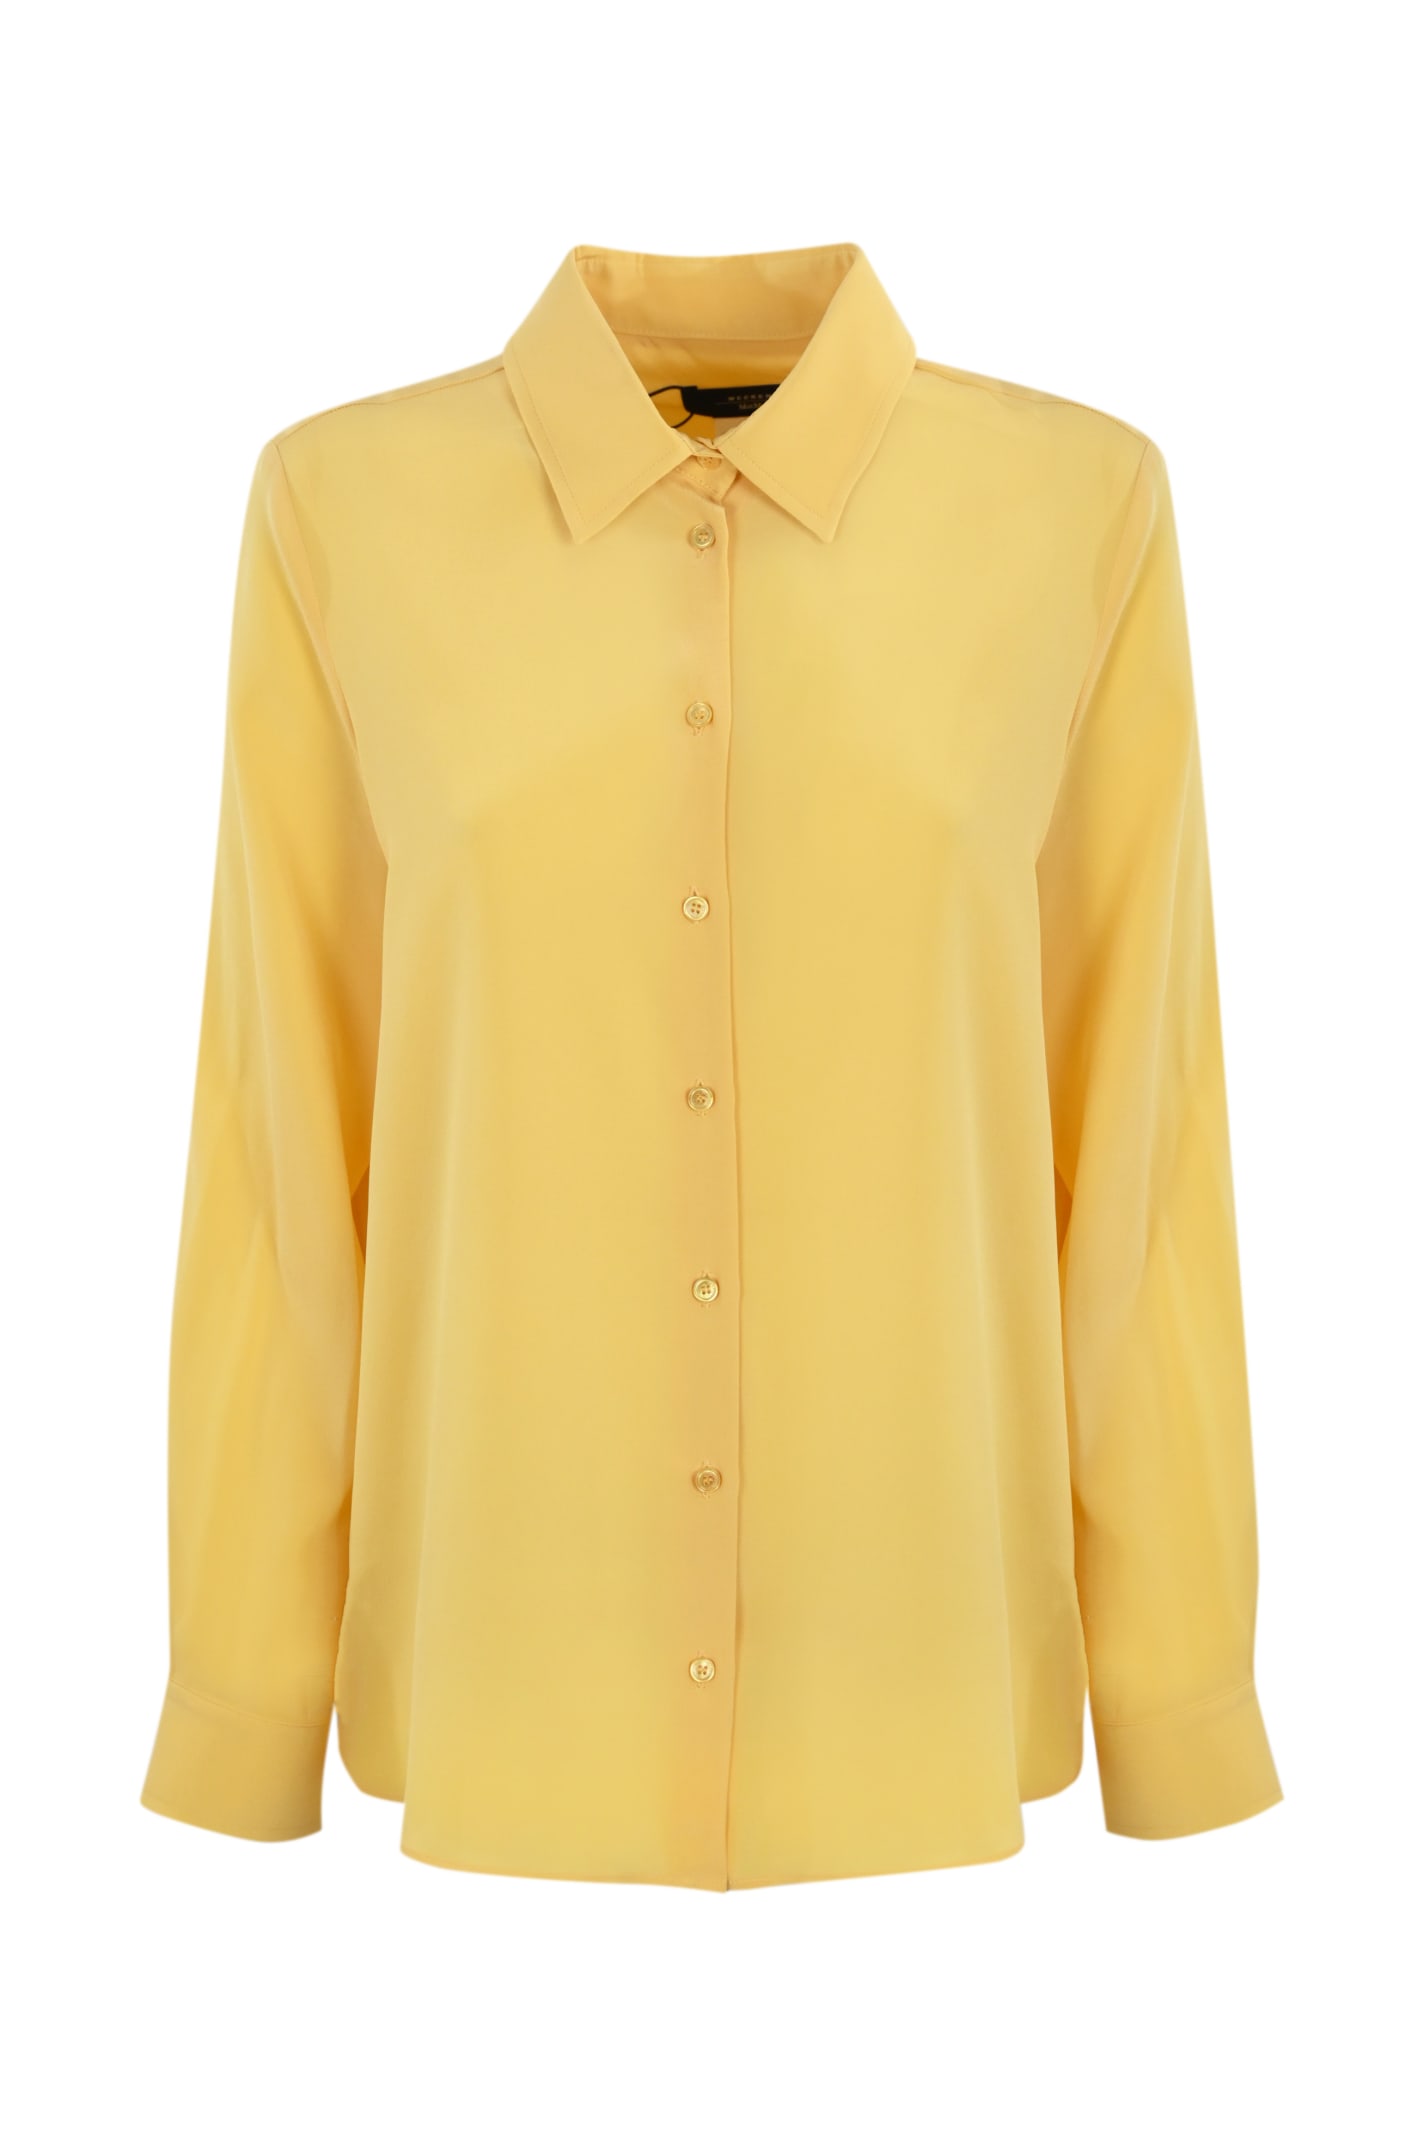 Weekend Max Mara Geo Chine Crepe Shirt In Yellow